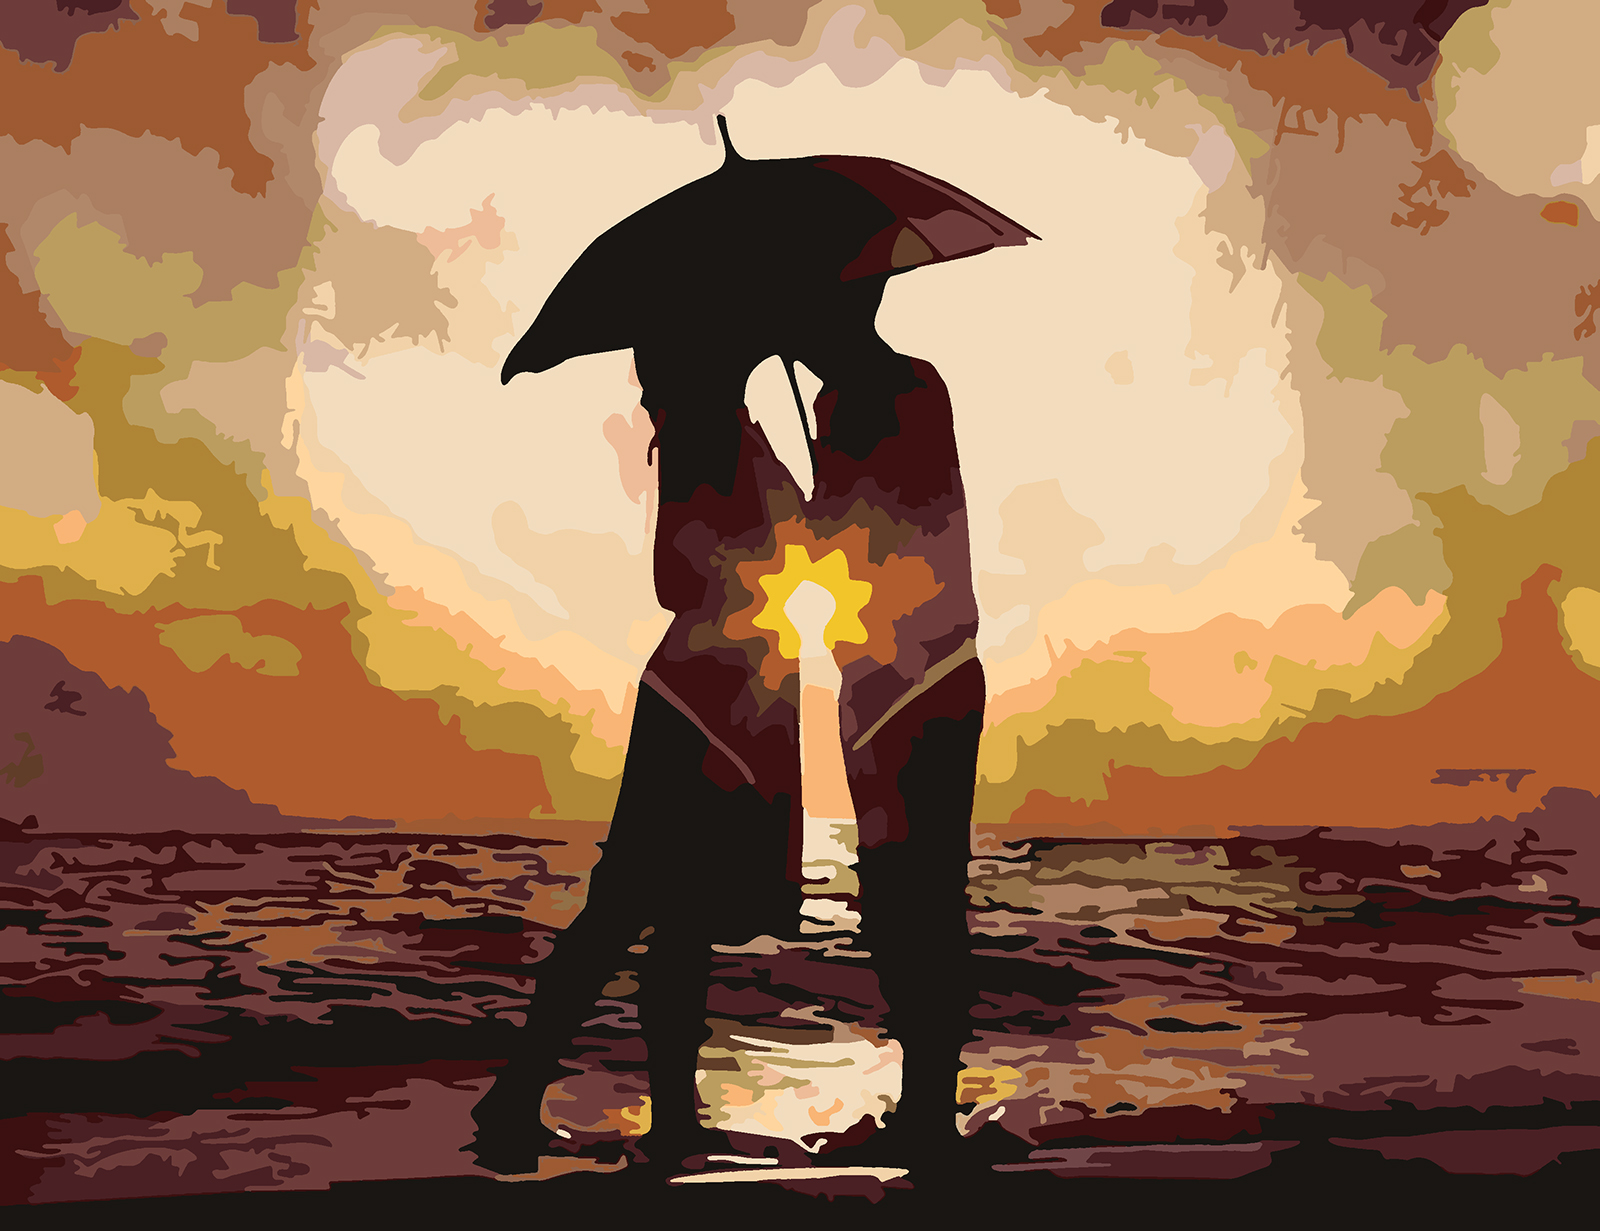 Мужчина и женщина под зонтом